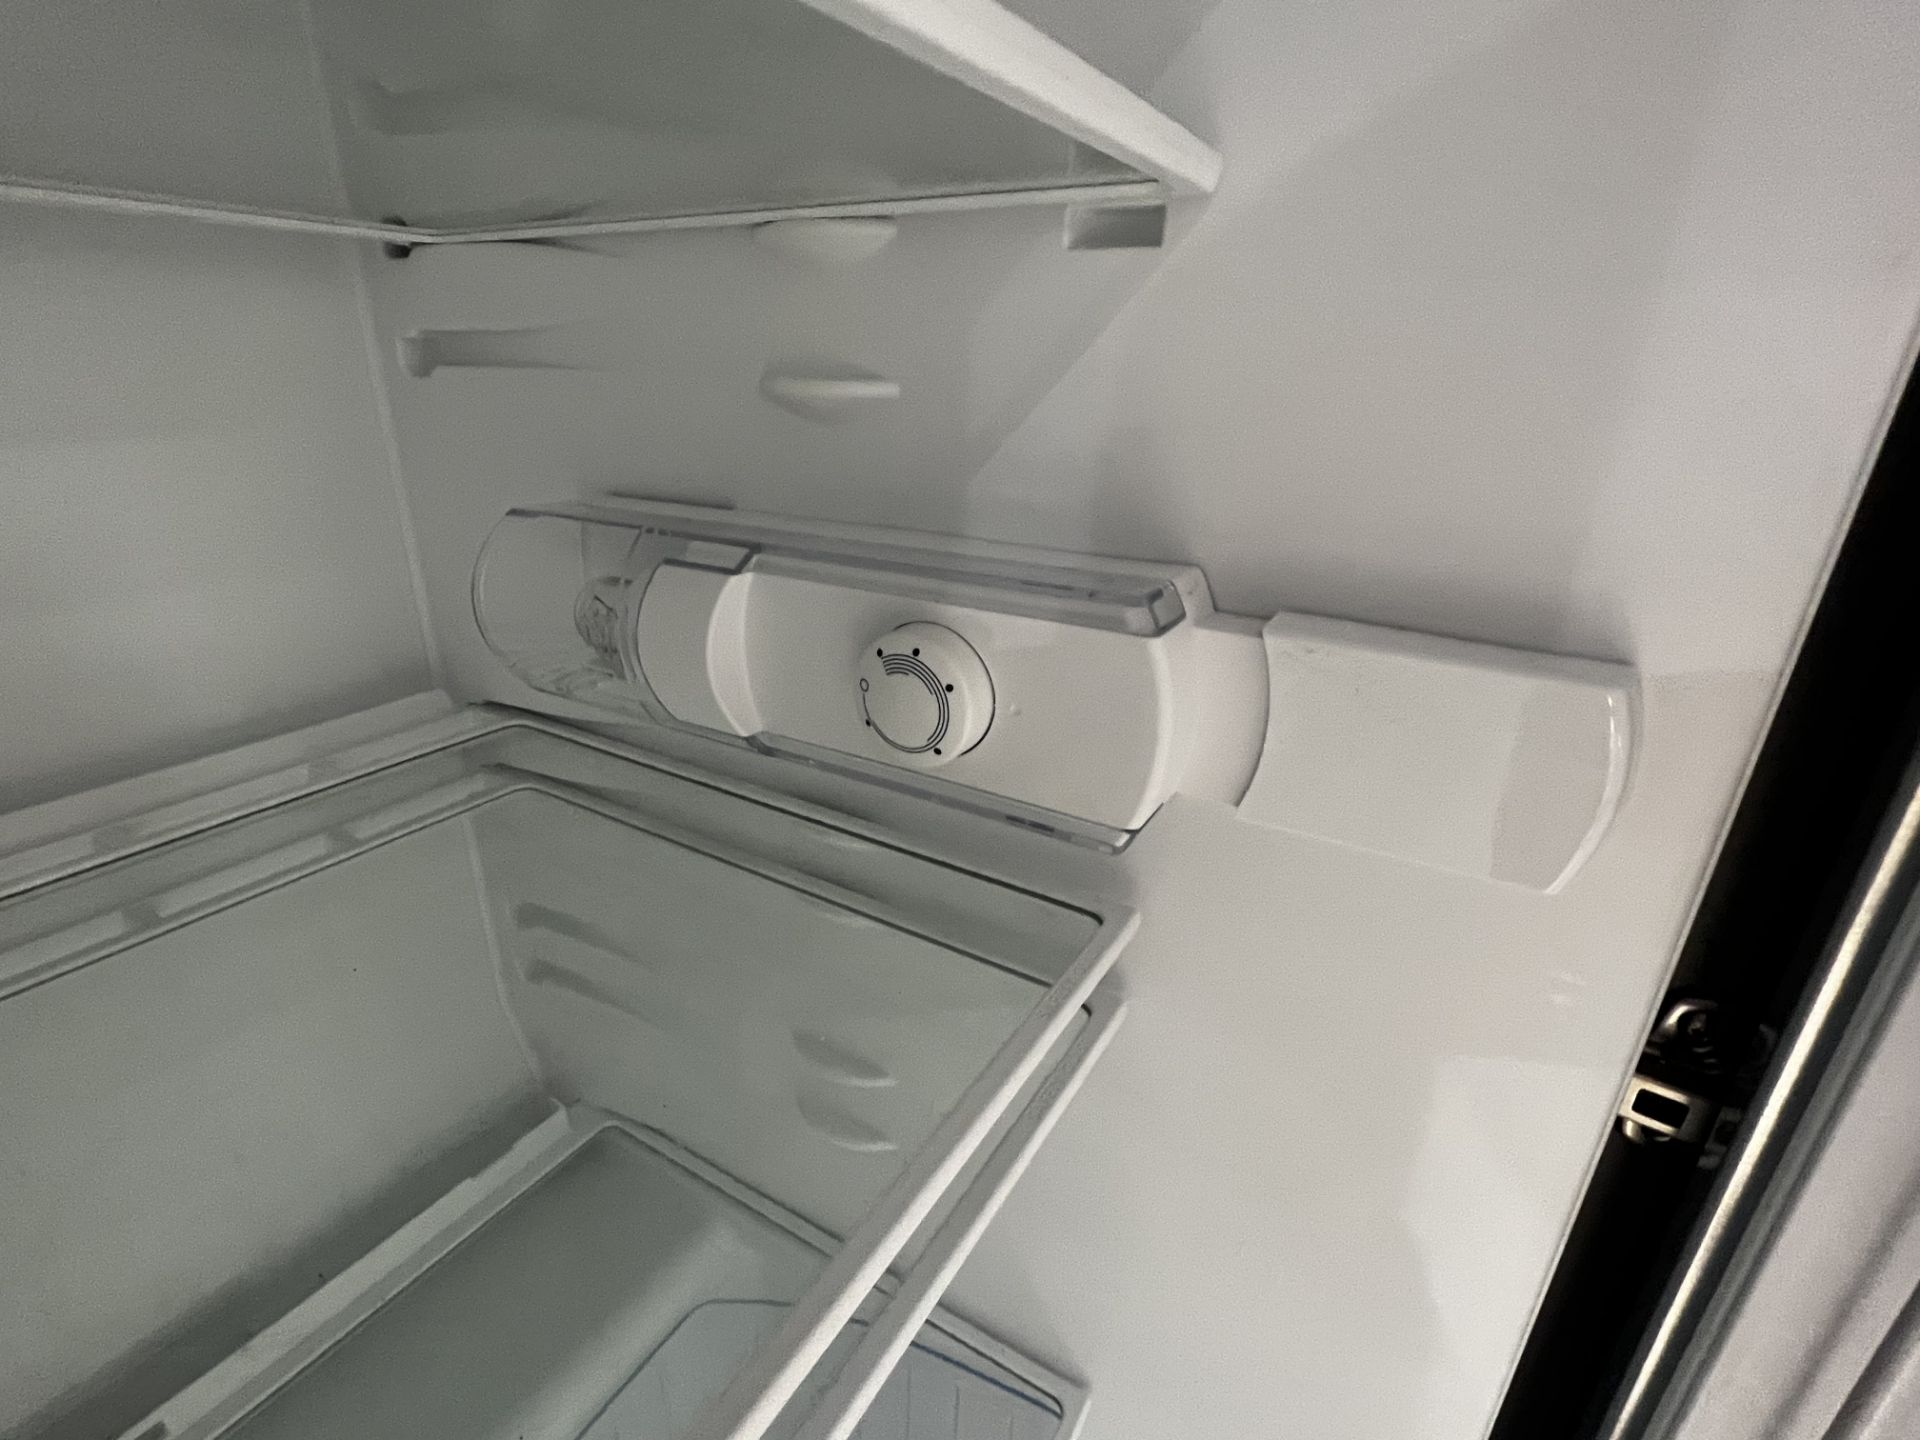 Bosch fridge (built in) - Image 3 of 5